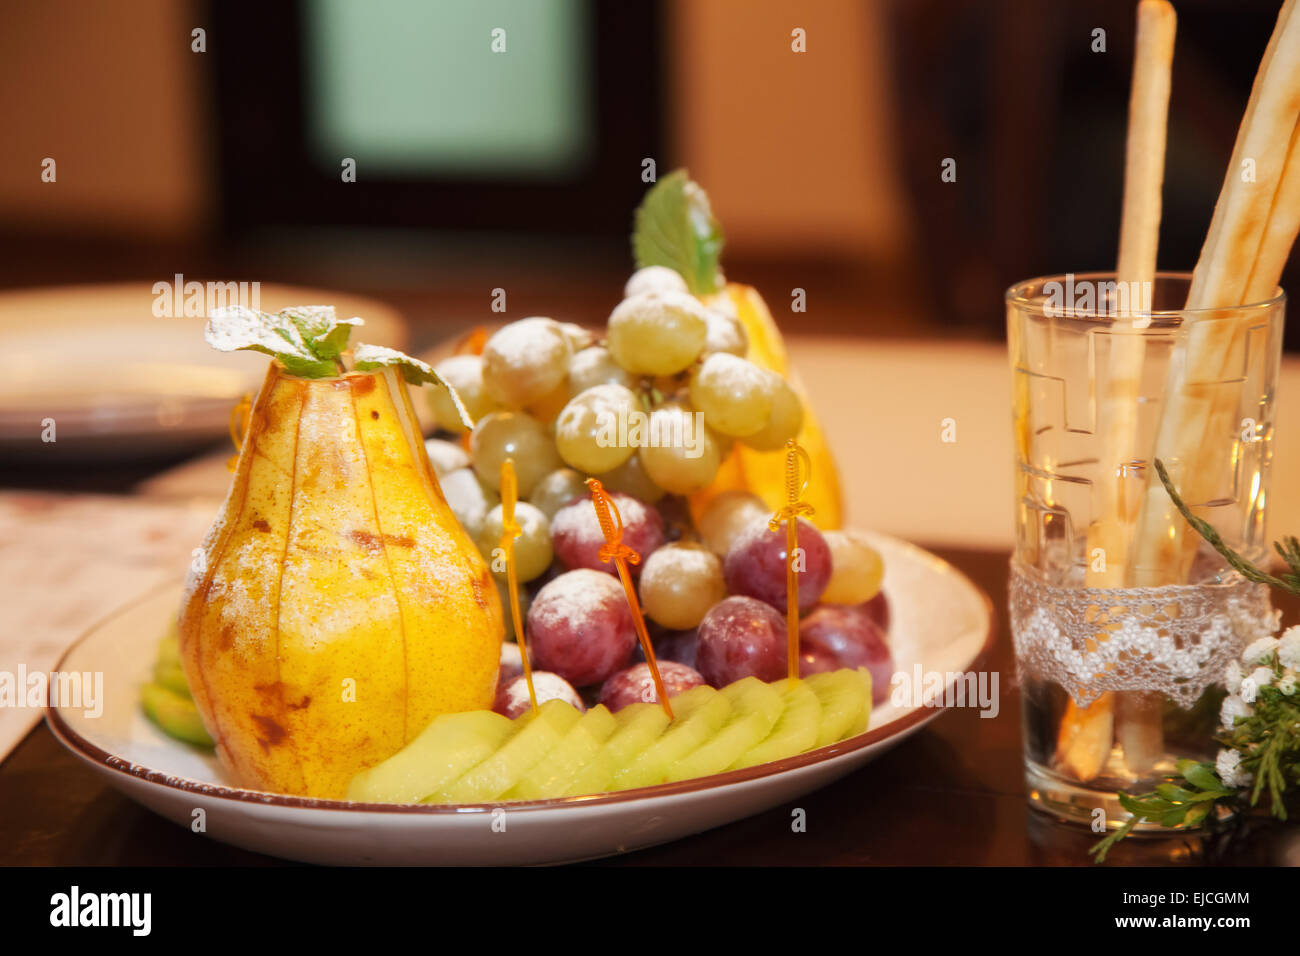 Bel frutto sul tavolo Foto Stock